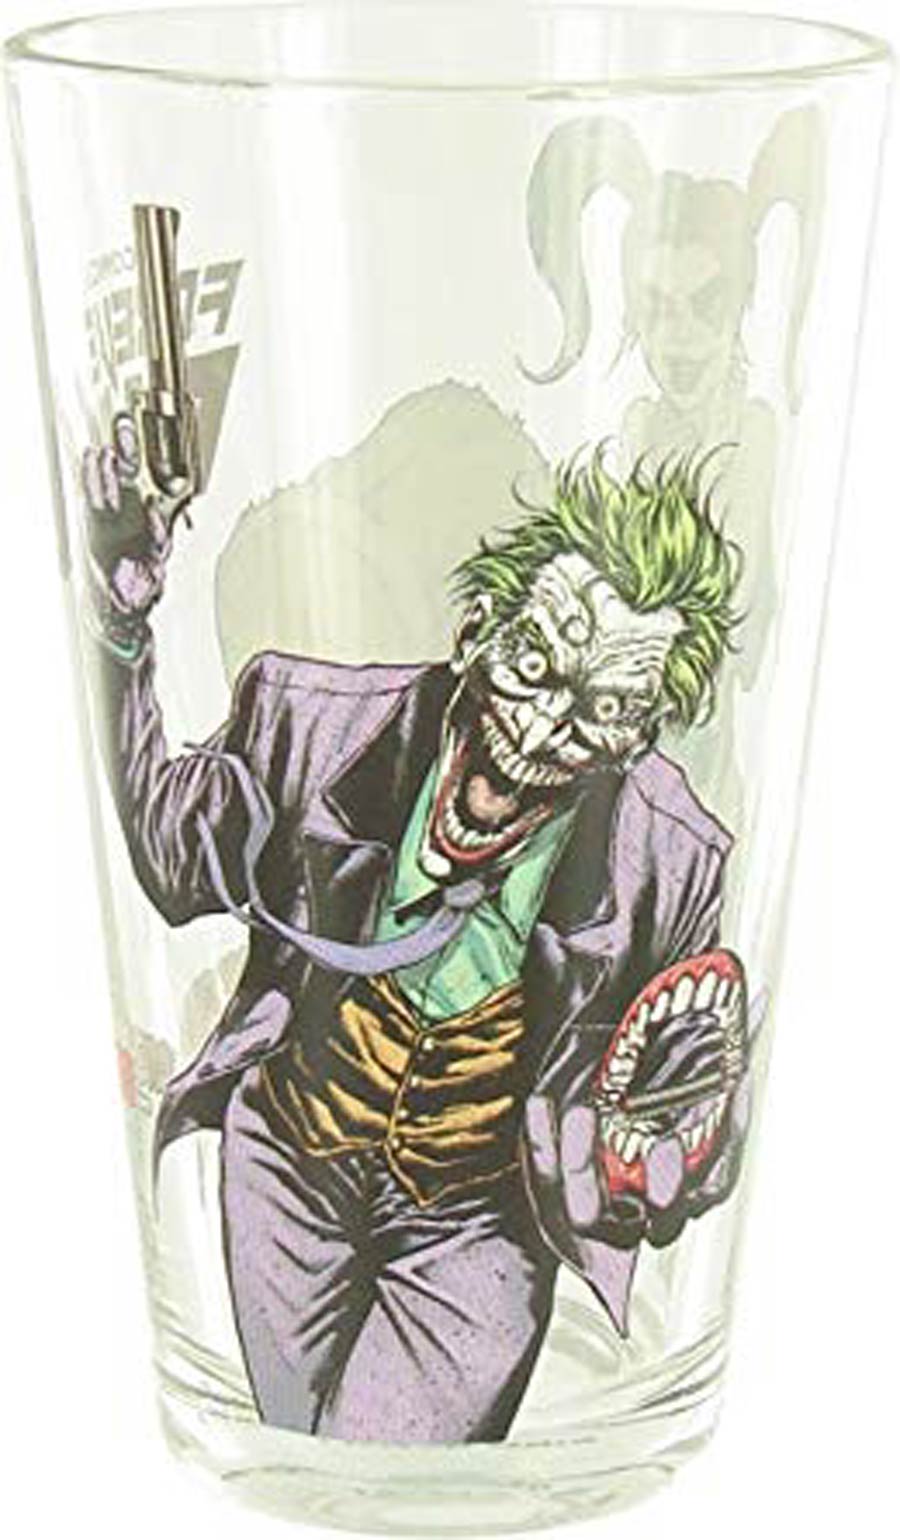 DC Comics Classic Toon Tumbler - Joker Forever Evil